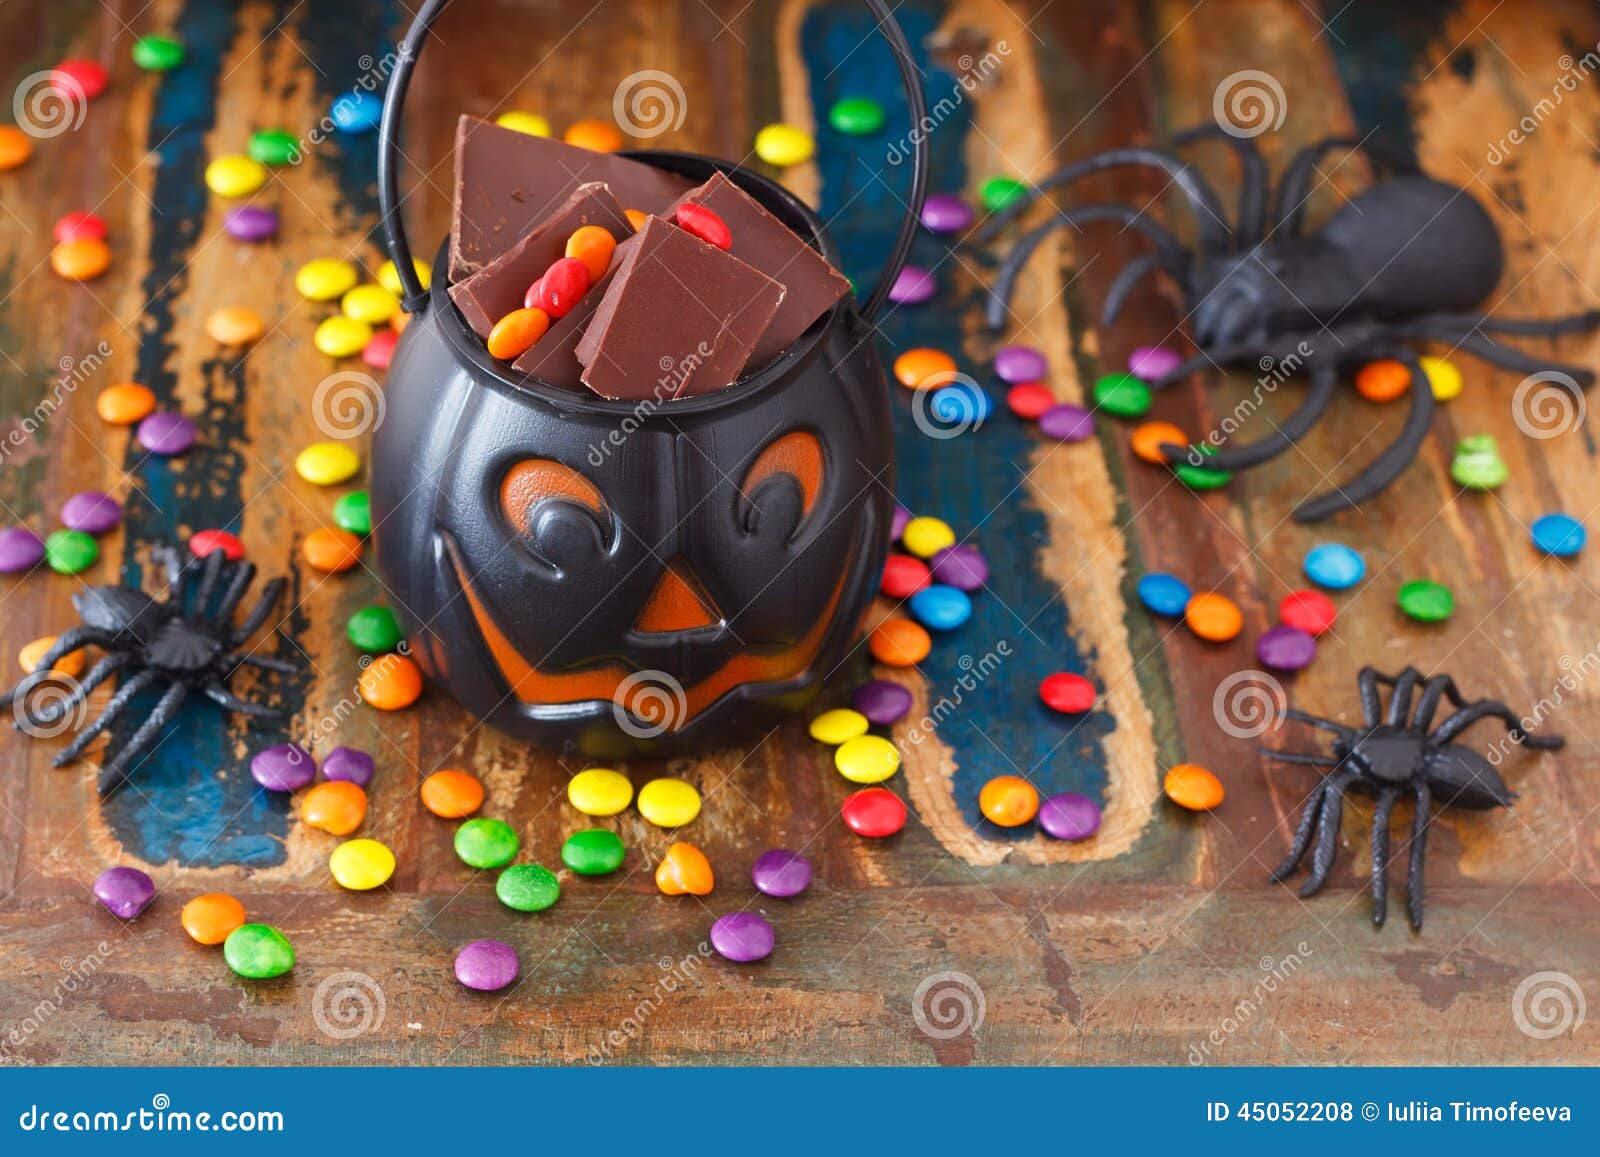 Bonbons Au Chocolat à Bonbons Pour Halloween, Araignée Photo stock